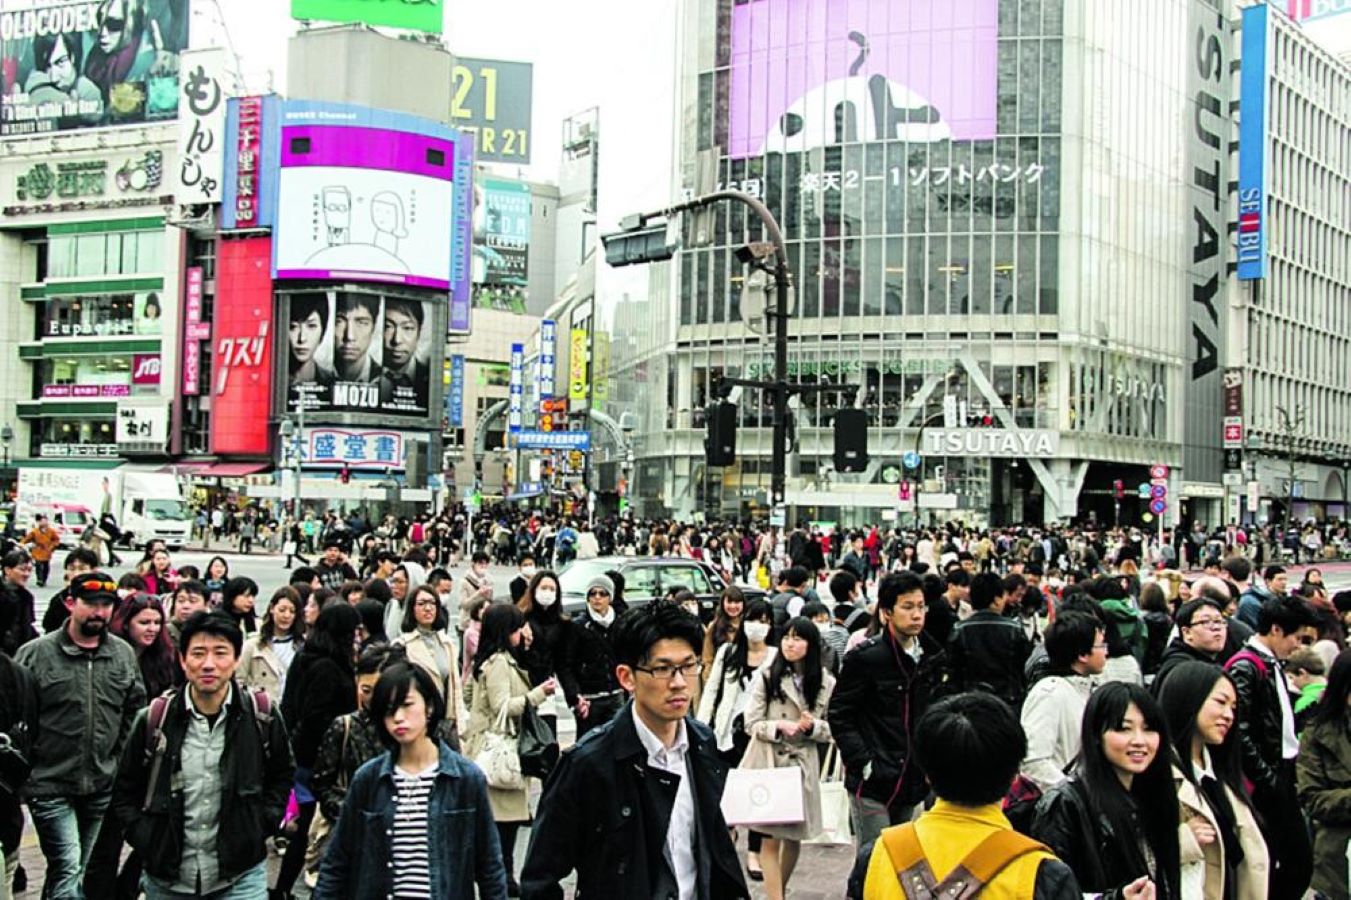 7500 دولار عن كل طفل.. اليابان تحفّز سكان طوكيو مالياً للعيش خارج العاصمة